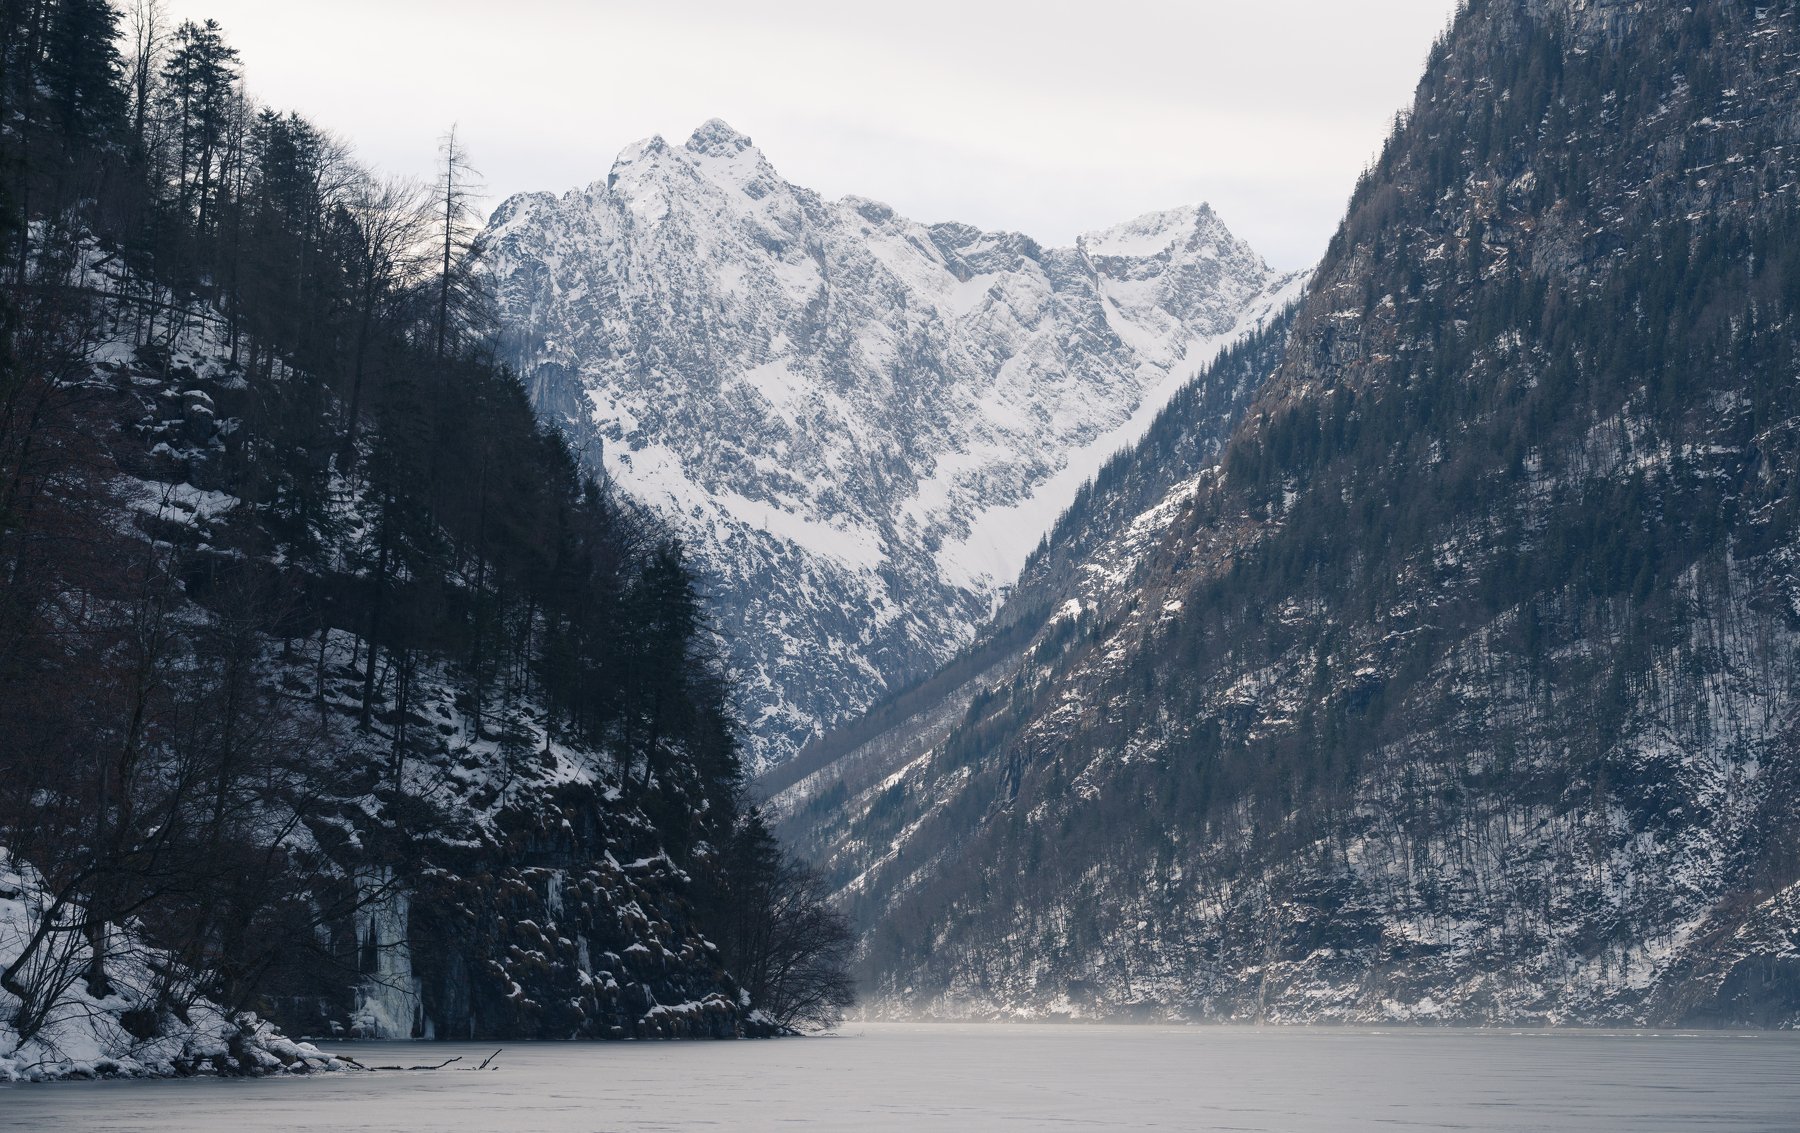 Alps, Germany, winter, frozen, lake, travel, IvanKravtsov